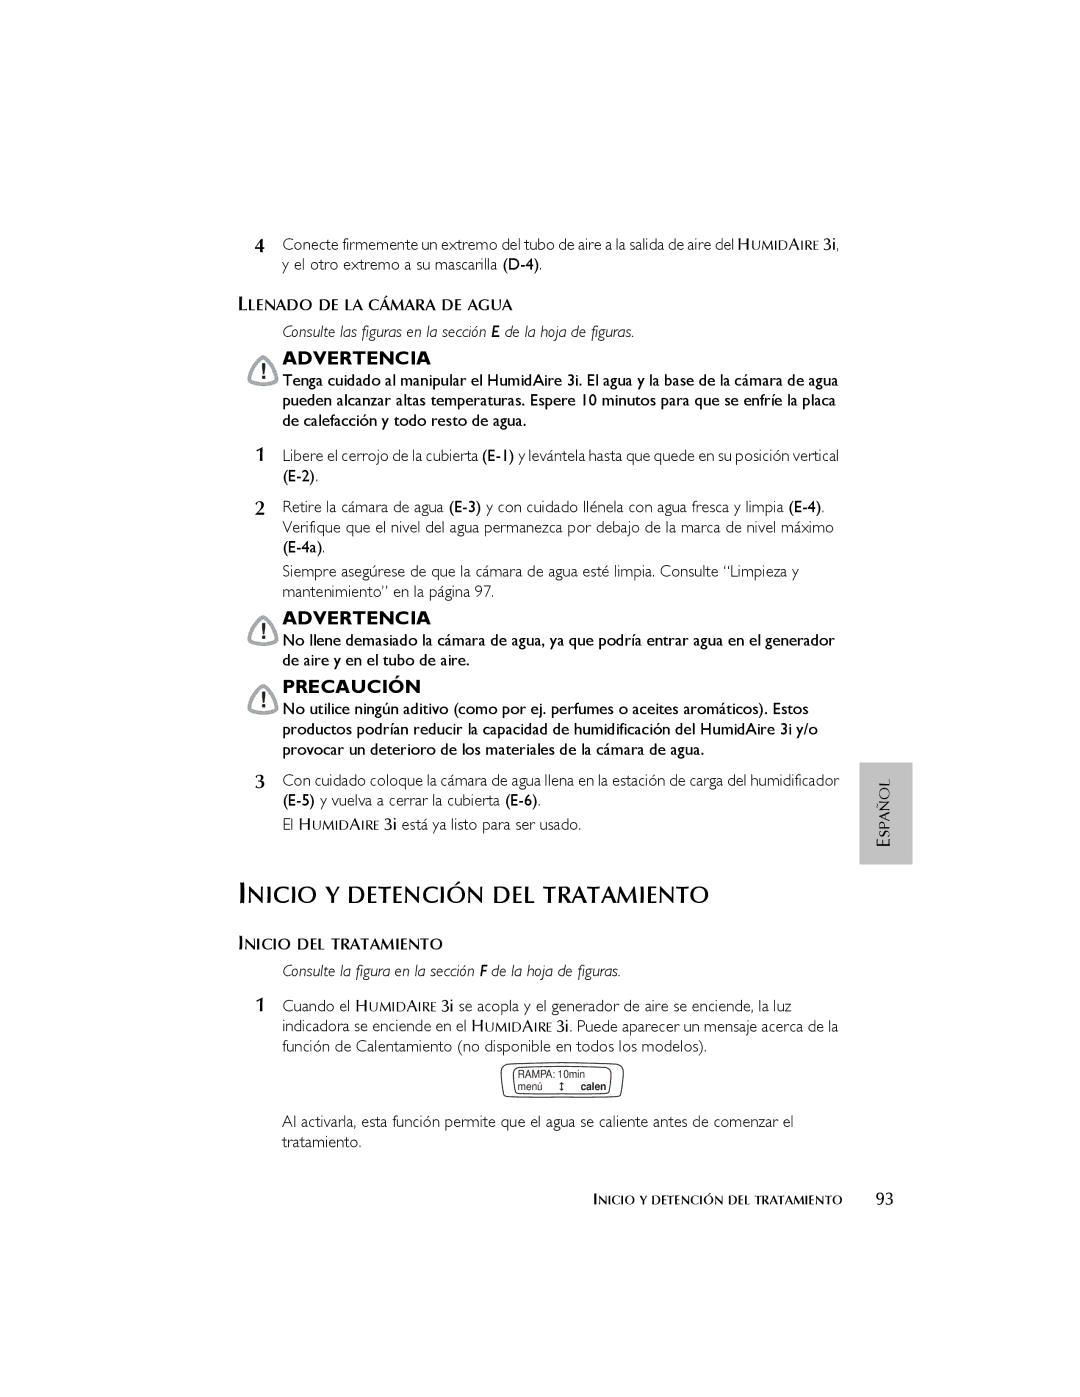 ResMed 3I user manual Inicio Y Detención DEL Tratamiento, Llenado DE LA Cámara DE Agua, Inicio DEL Tratamiento 